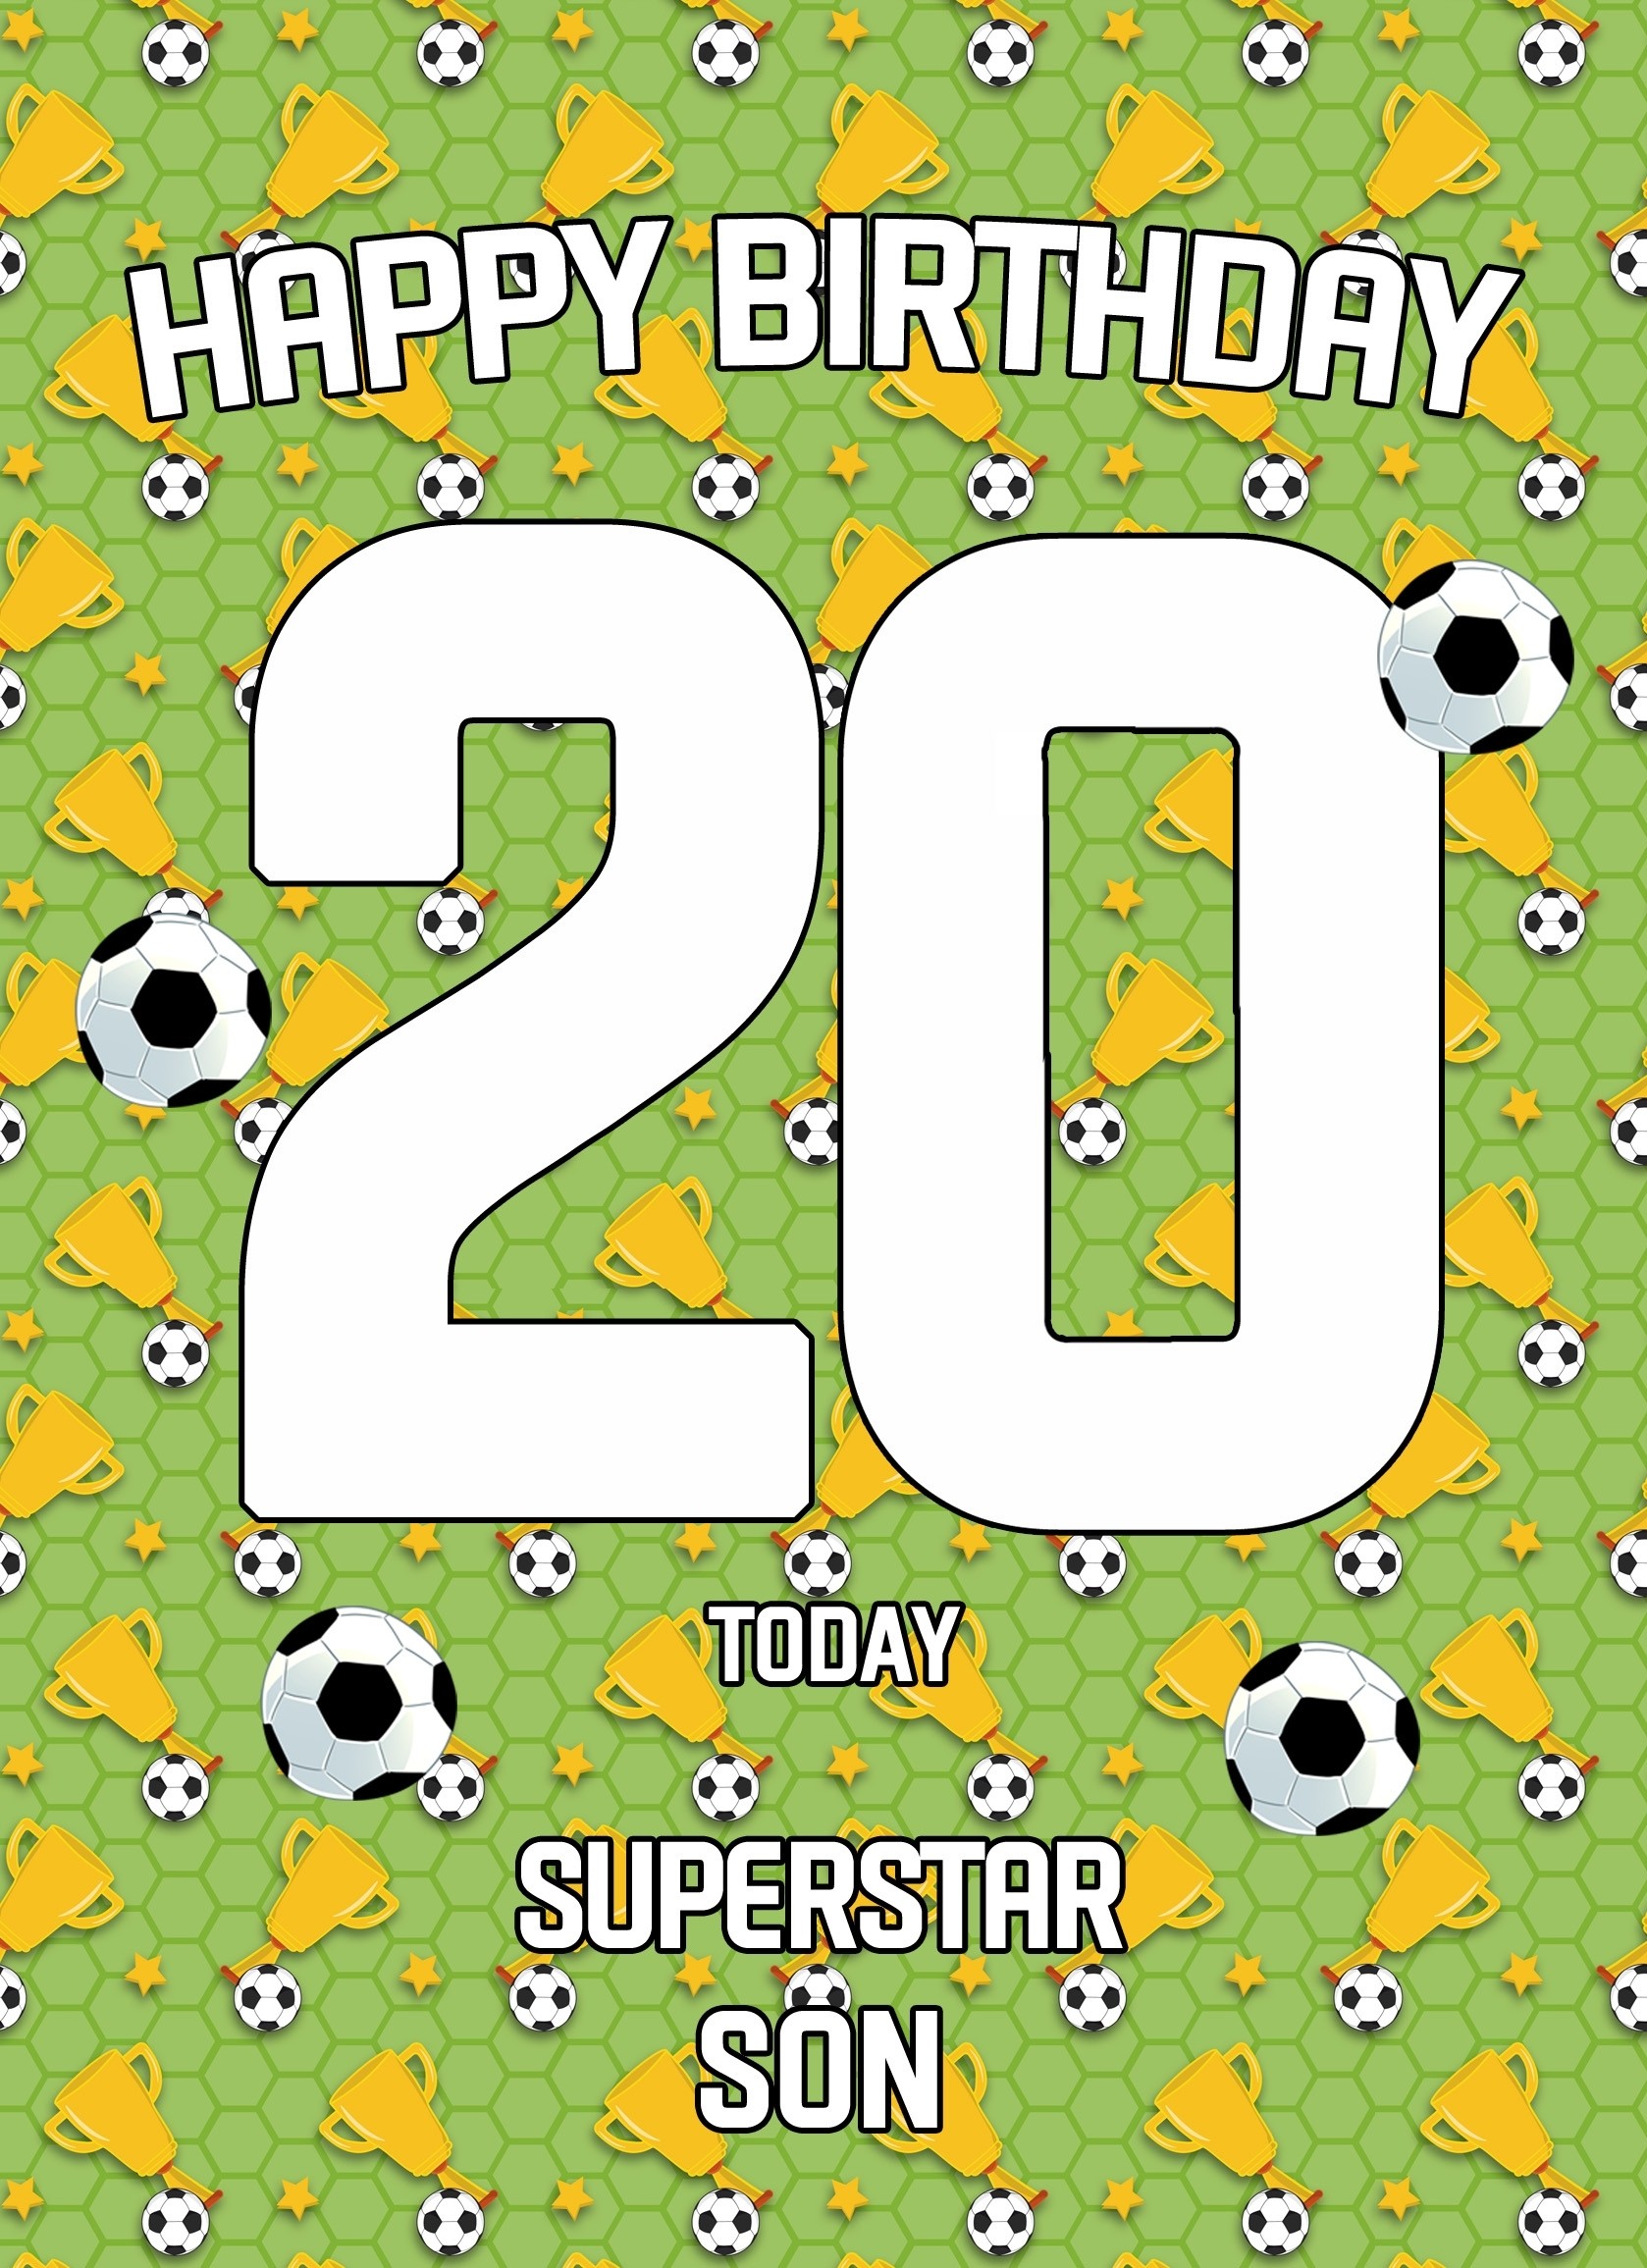 20th Birthday Football Card for Son